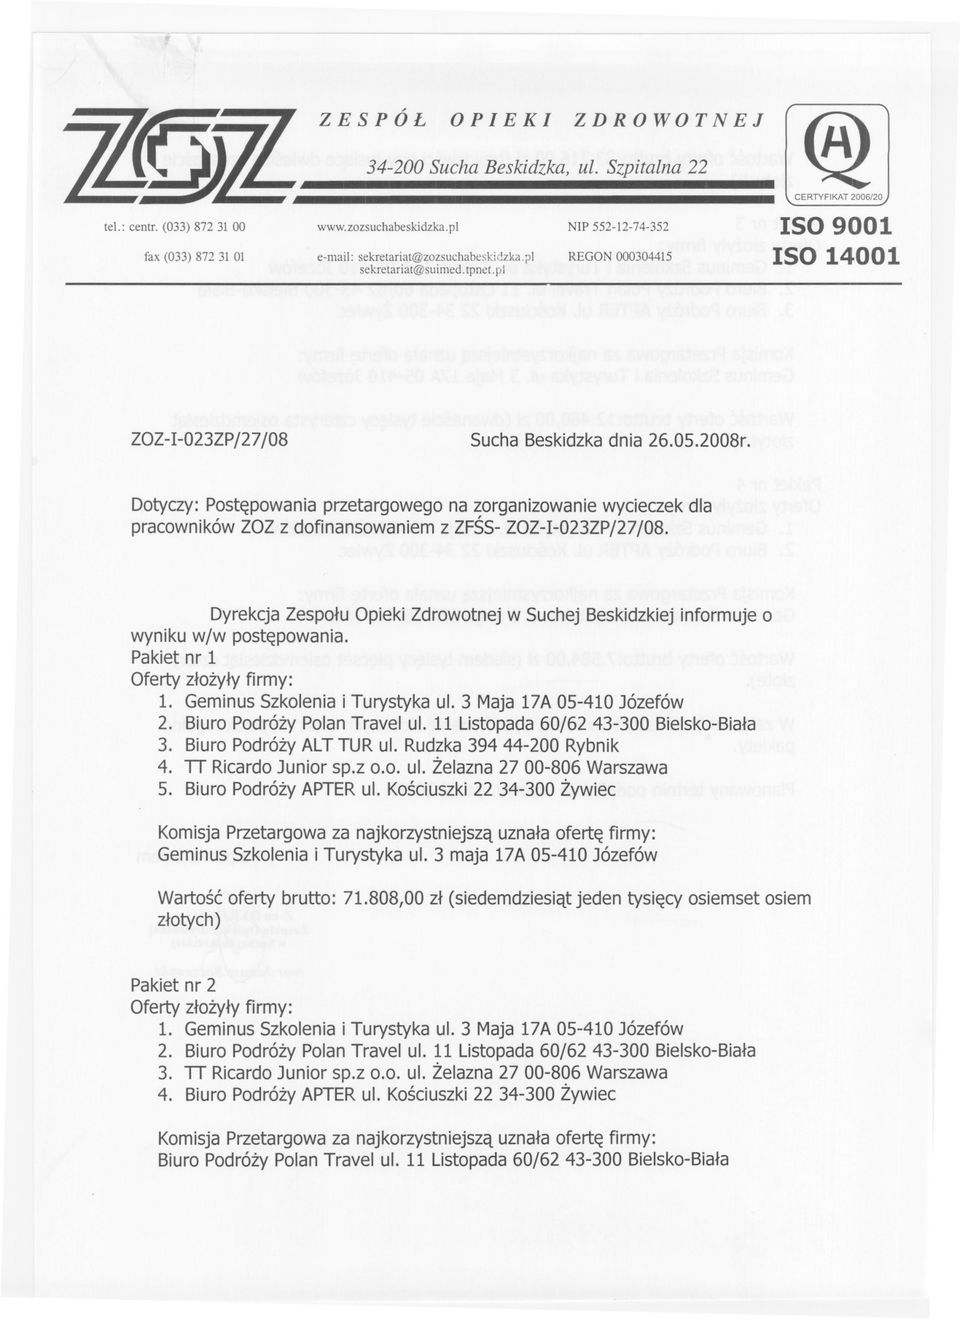 Dotyczy:Postepowaniaprzetargowegona zorganizowaniewycieczekdla pracownikówzozz dofinansowaniemz ZFSS-ZOZ-I-023ZP/27/08.